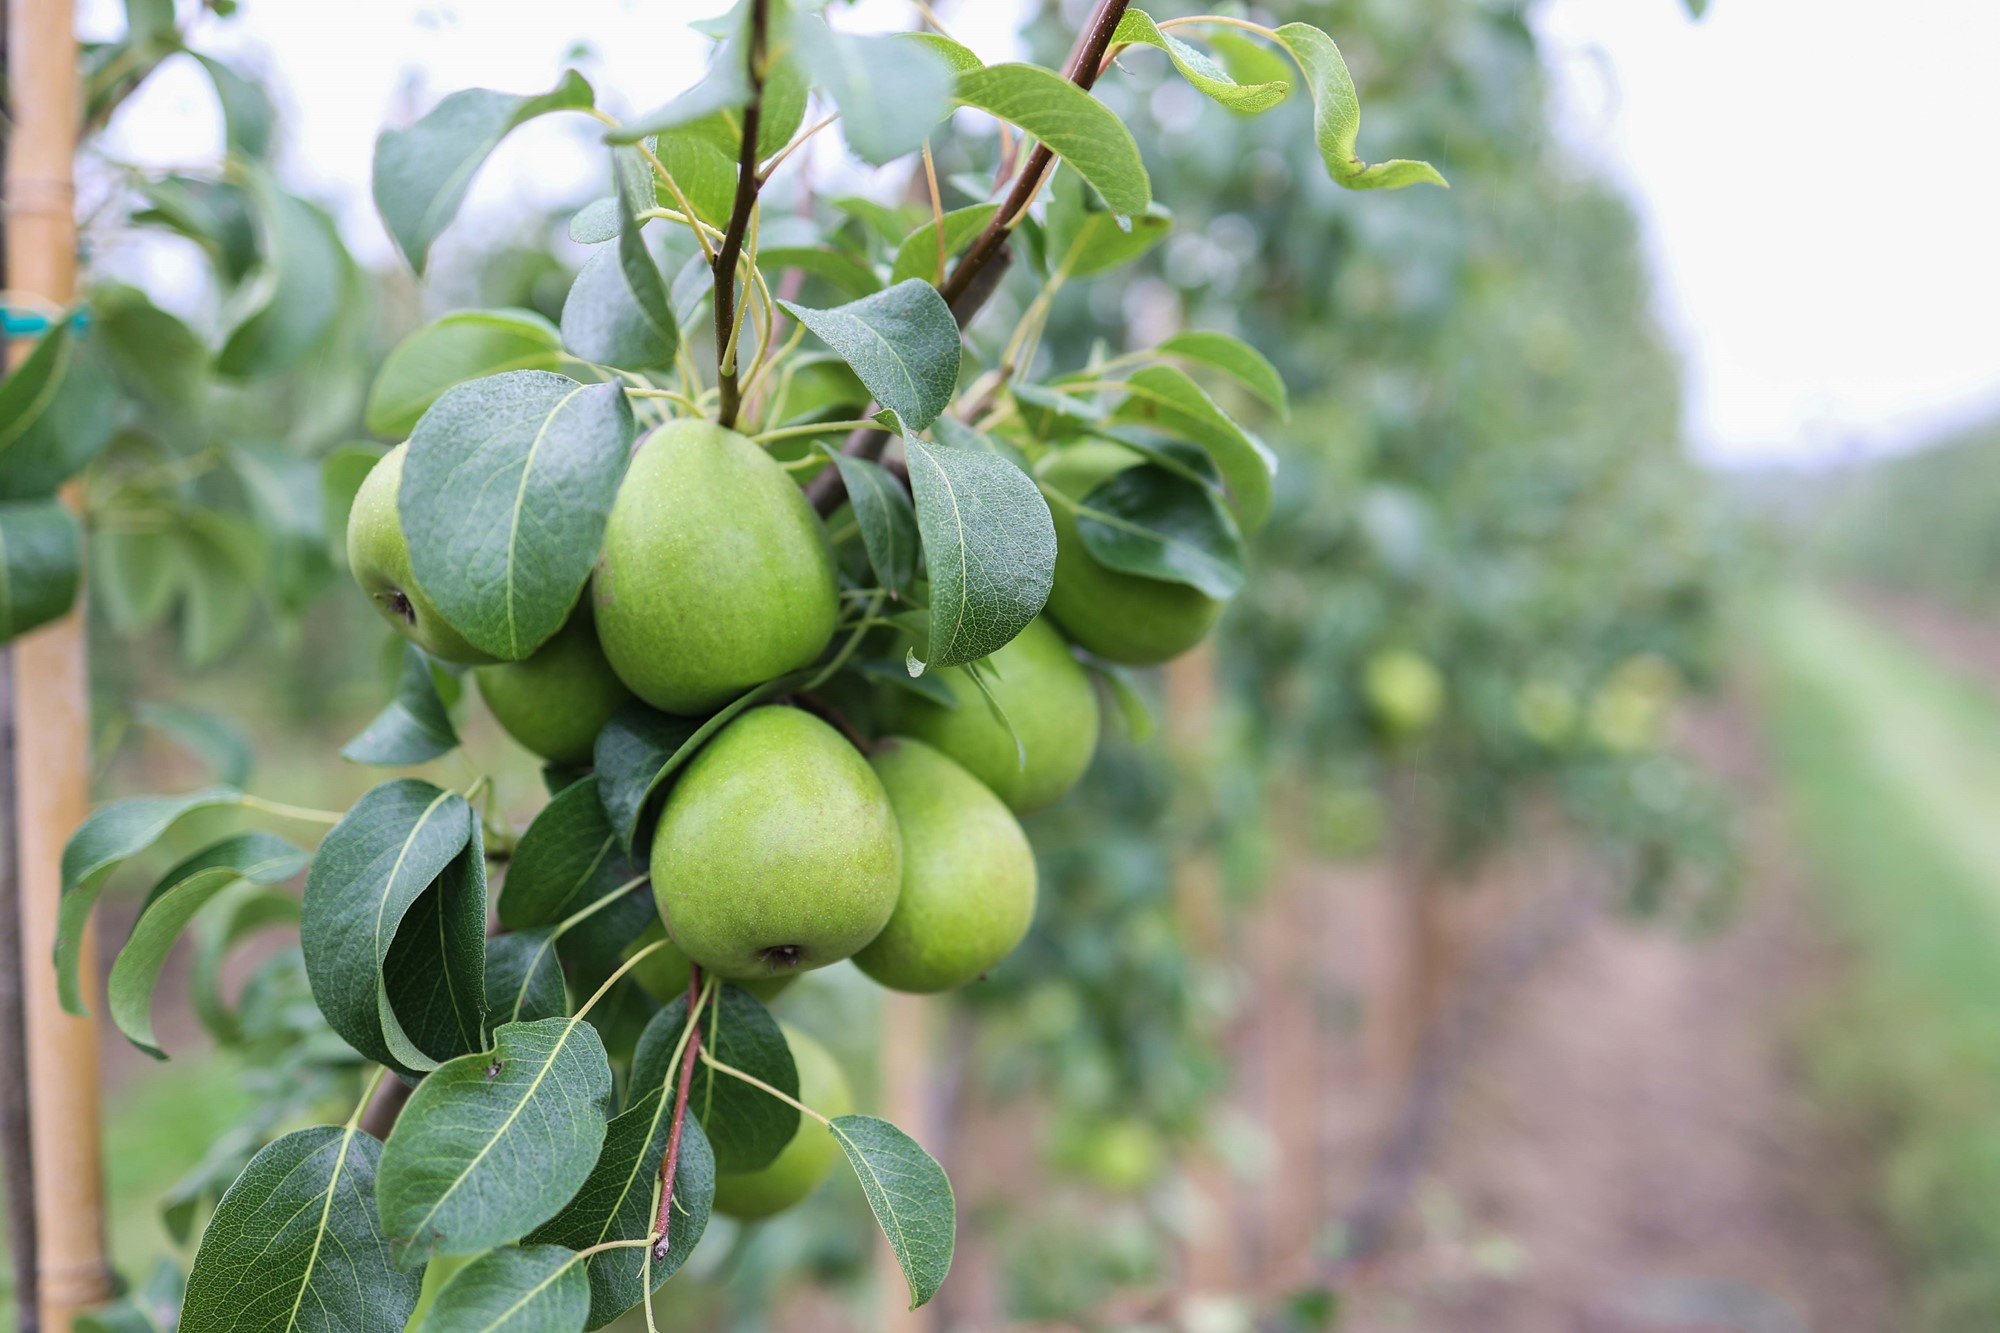 Svenska gröna pärong som hänger tätt tillsammans på ett päronträd i päronlunden